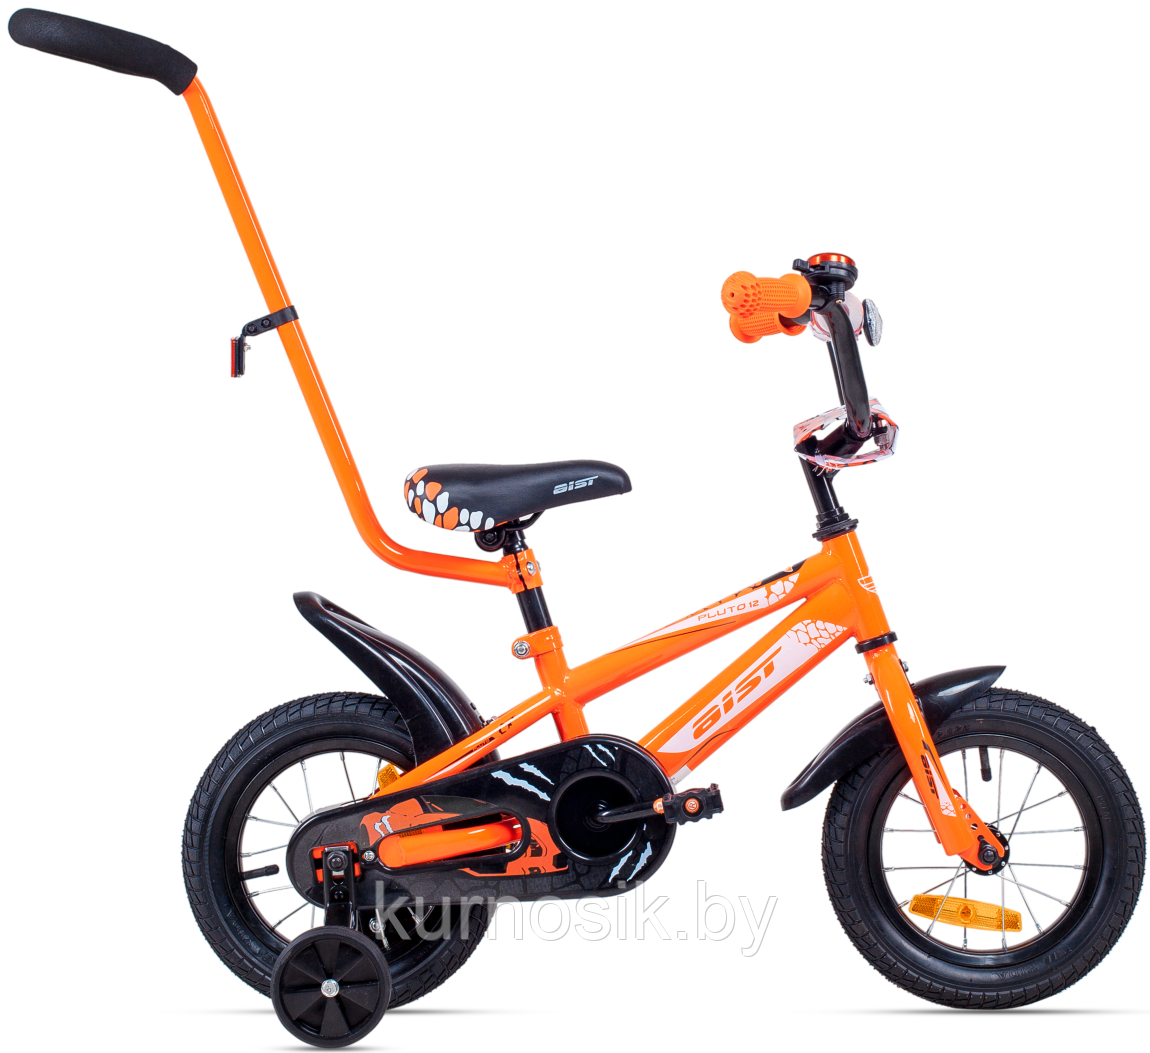 Детский велосипед Aist Pluto 12" оранжевый c 2 до 4 лет 